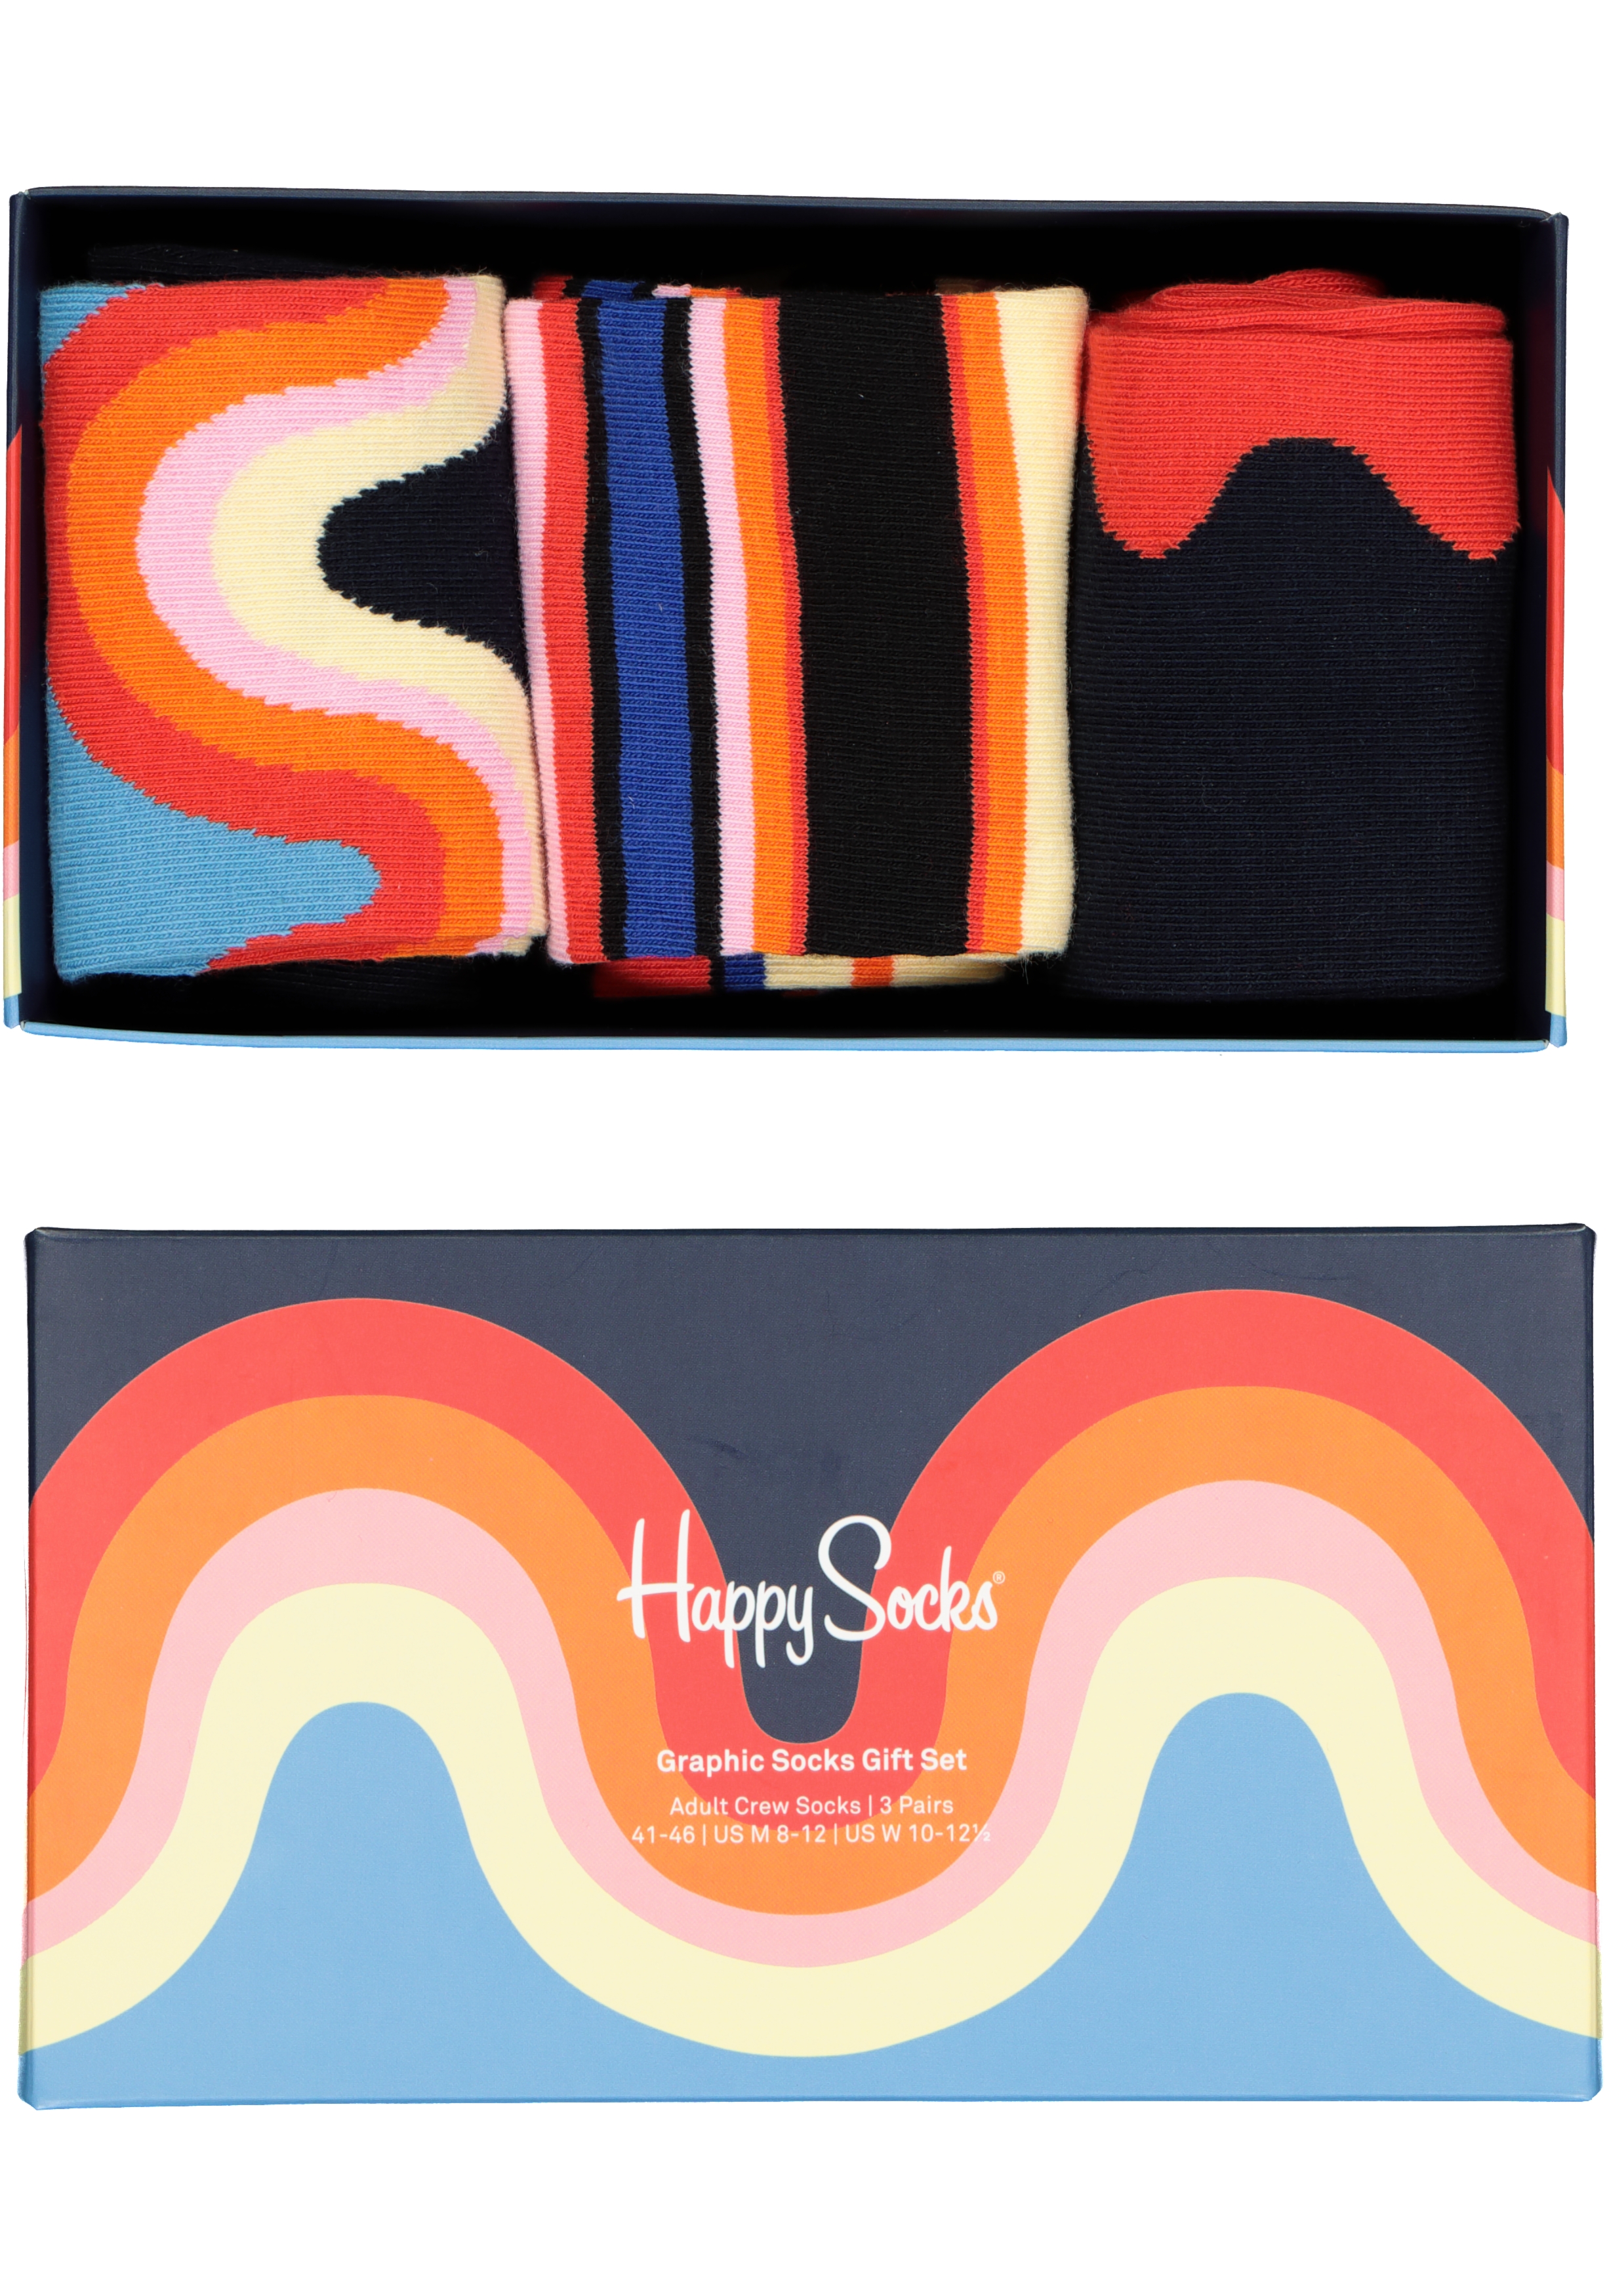 Happy Socks Graphic Socks Gift Set (3-pack)